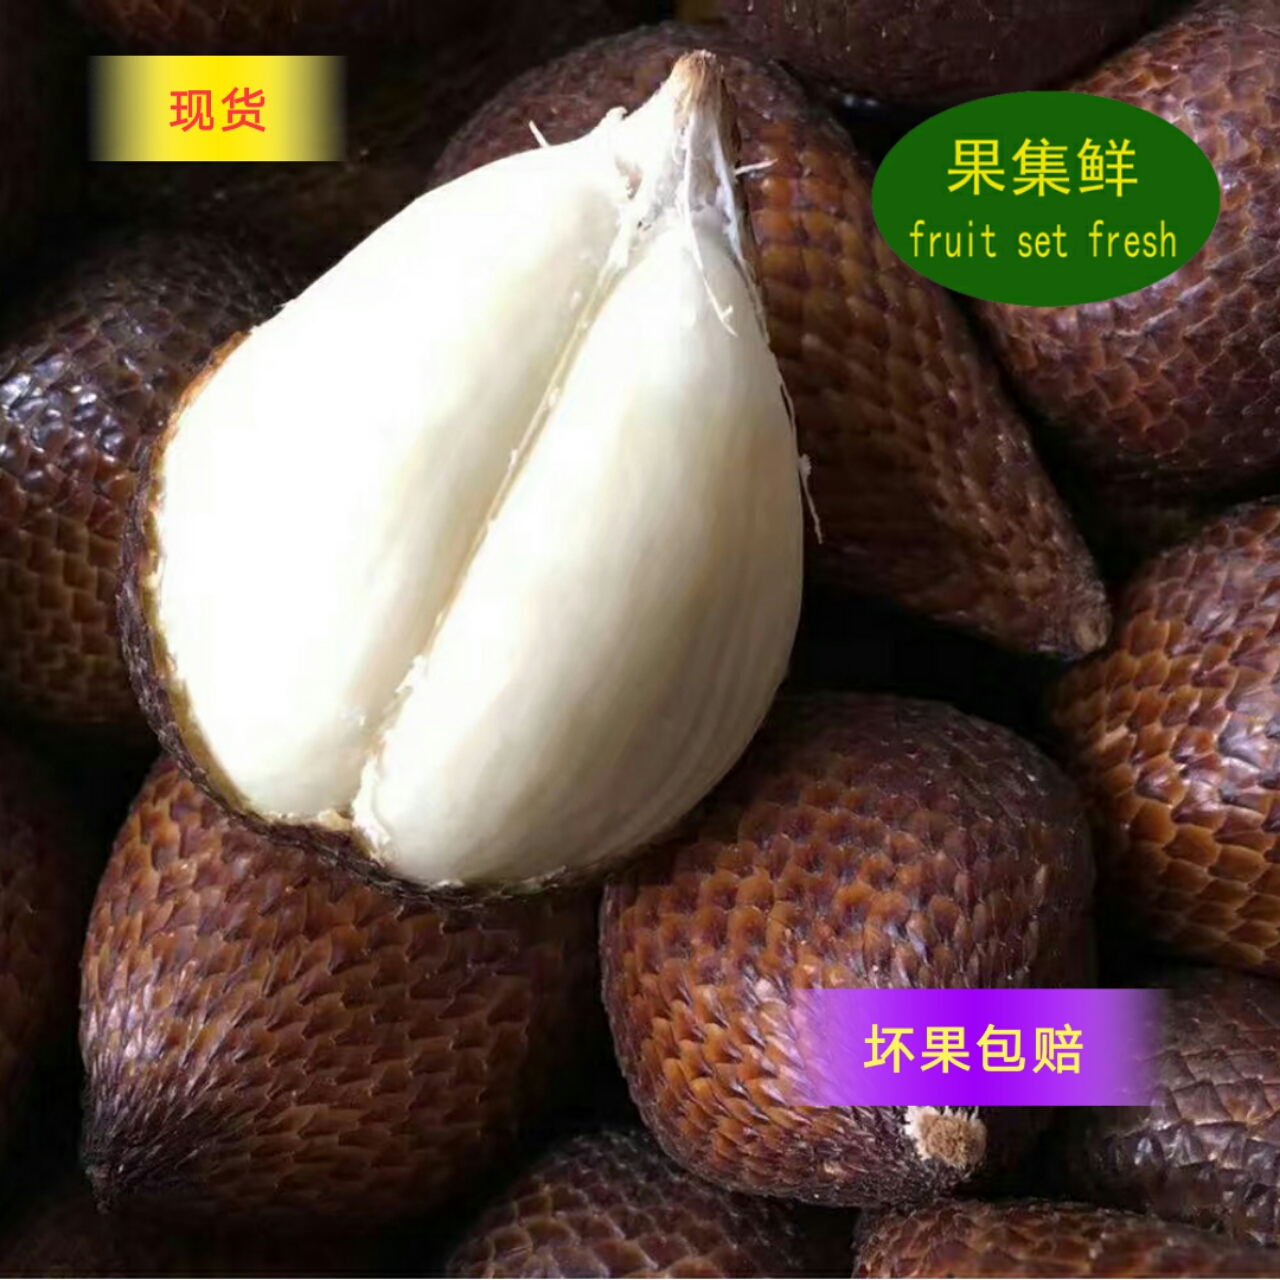 缺货果集鲜印尼蛇皮果 东南亚进口新鲜水果记忆之果2斤装顺丰包邮